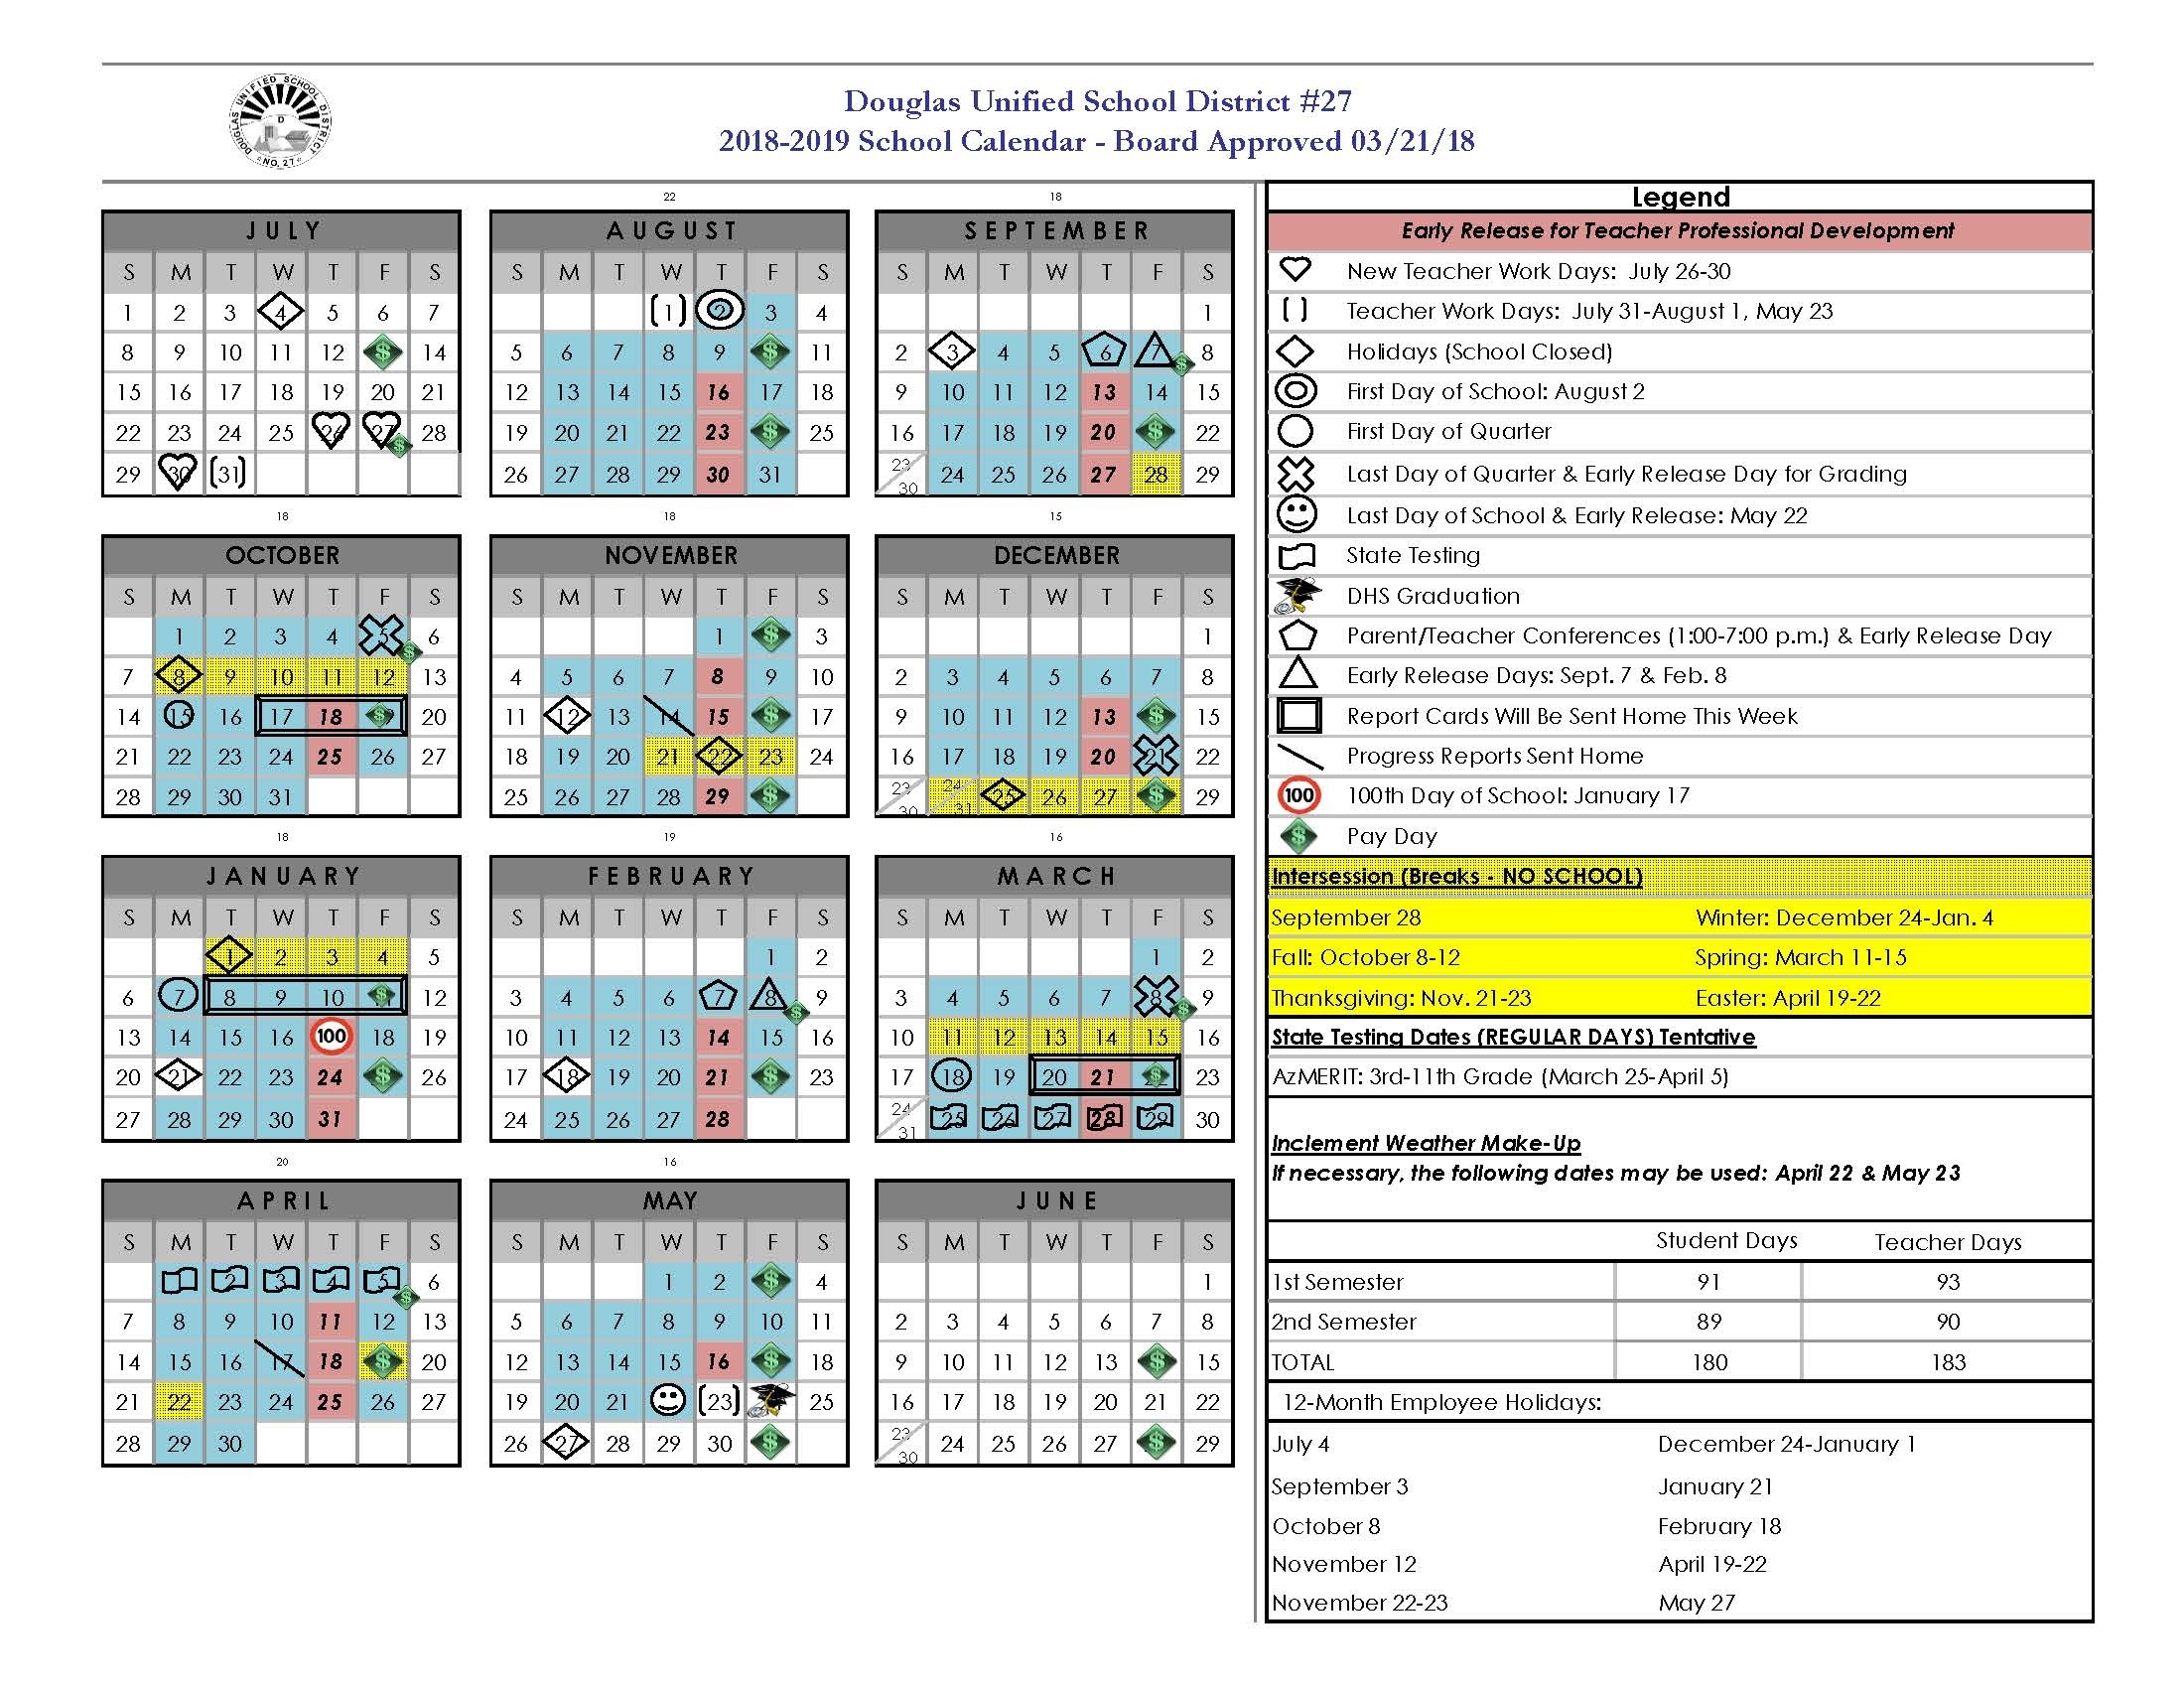 School Year Calendar | Douglas Usd 27 T/e Middle School Calendar